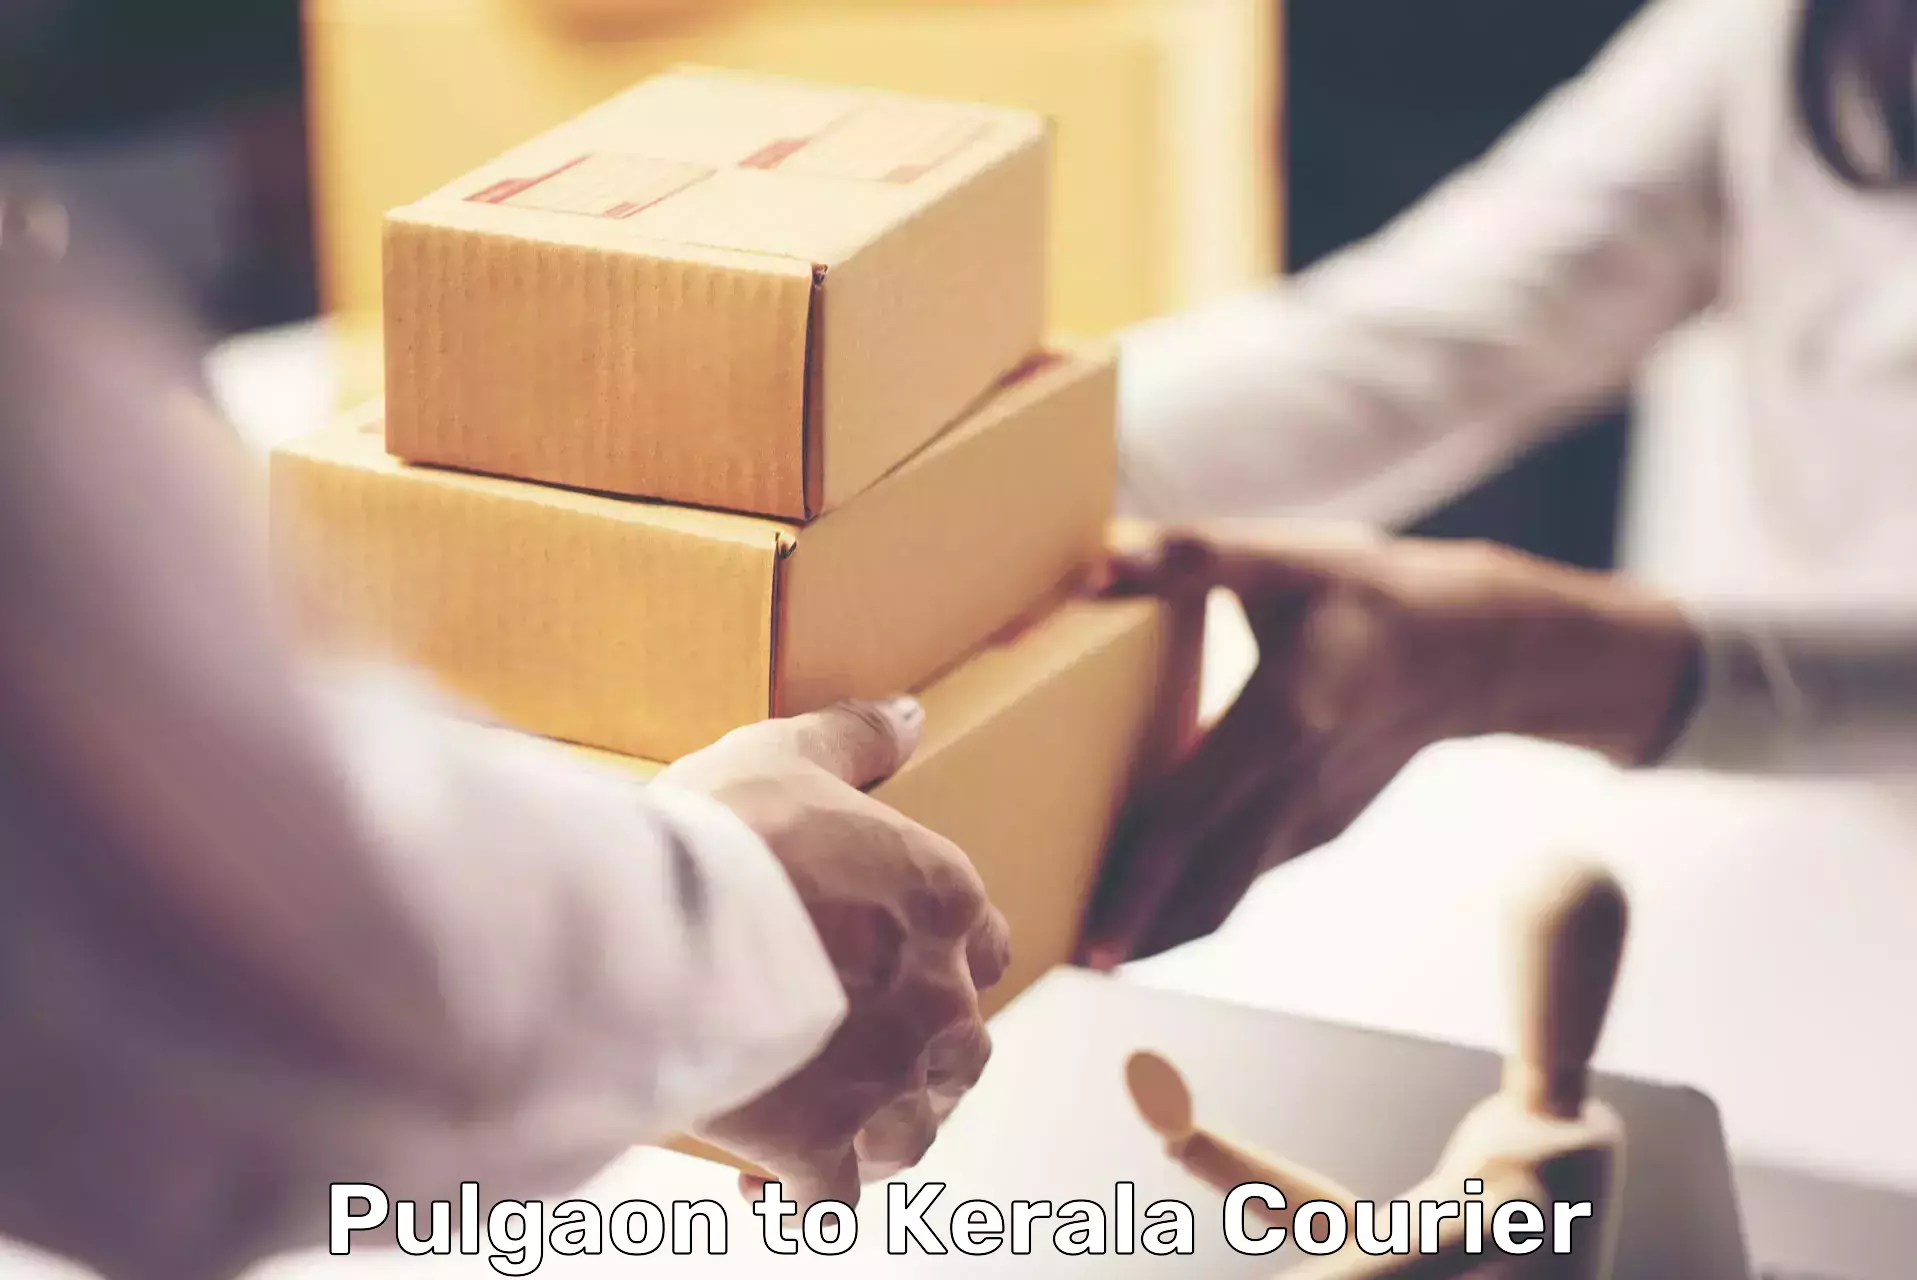 Courier service comparison Pulgaon to Narikkuni